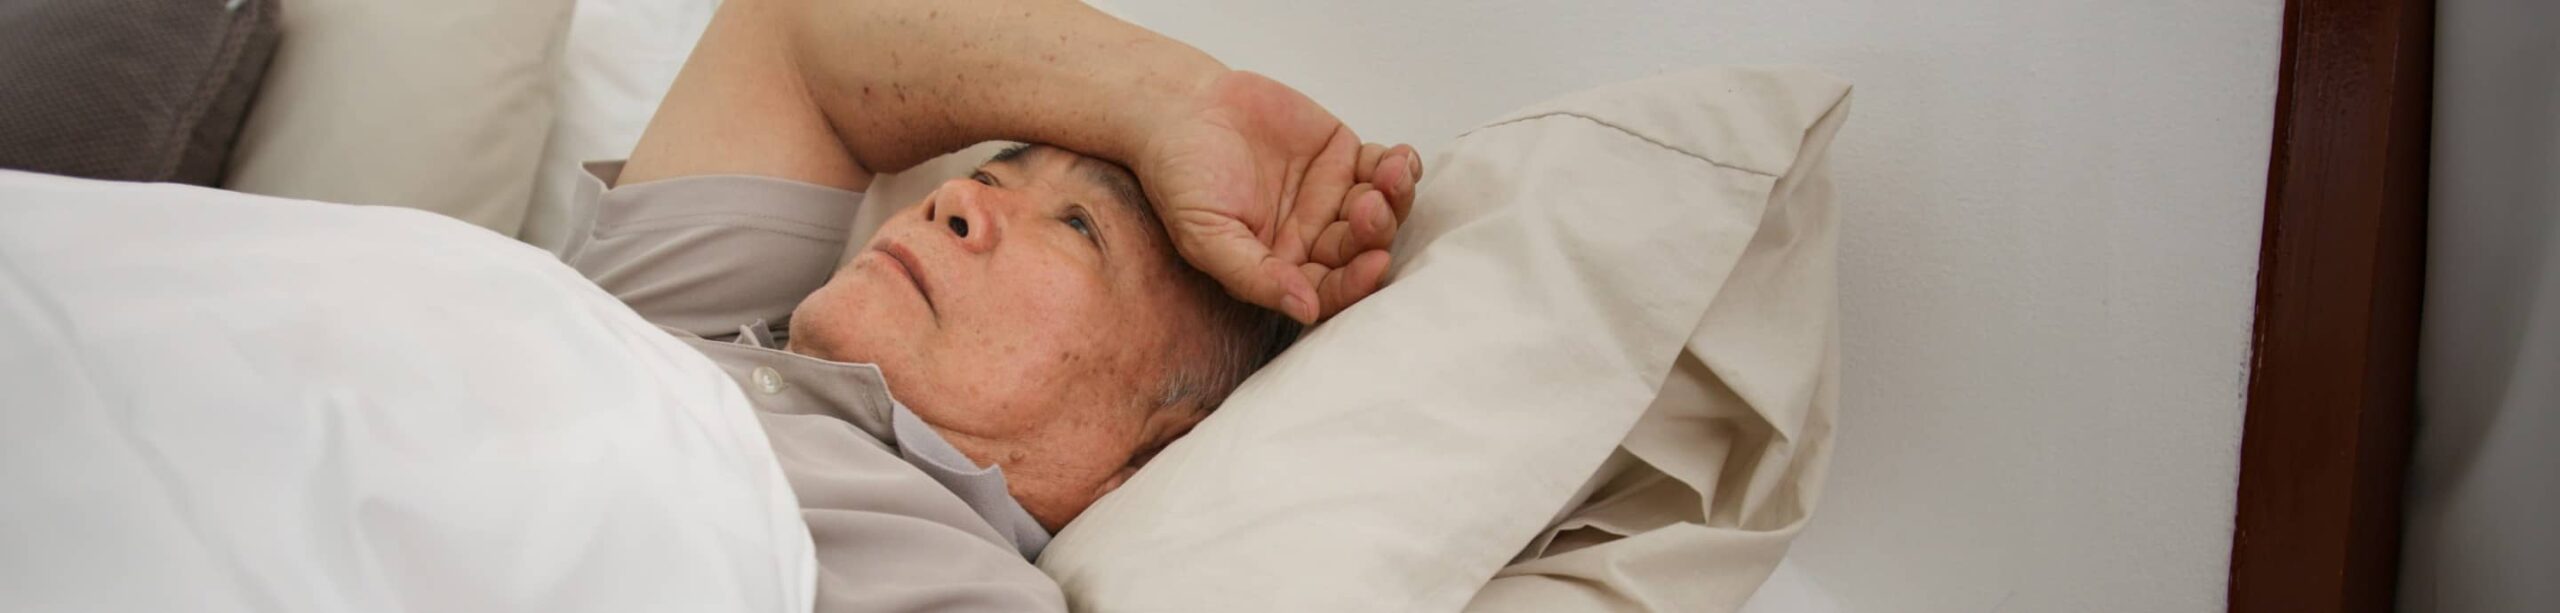 Les troubles du sommeil chez les personnes âgées | Clinalliance | EHPAD